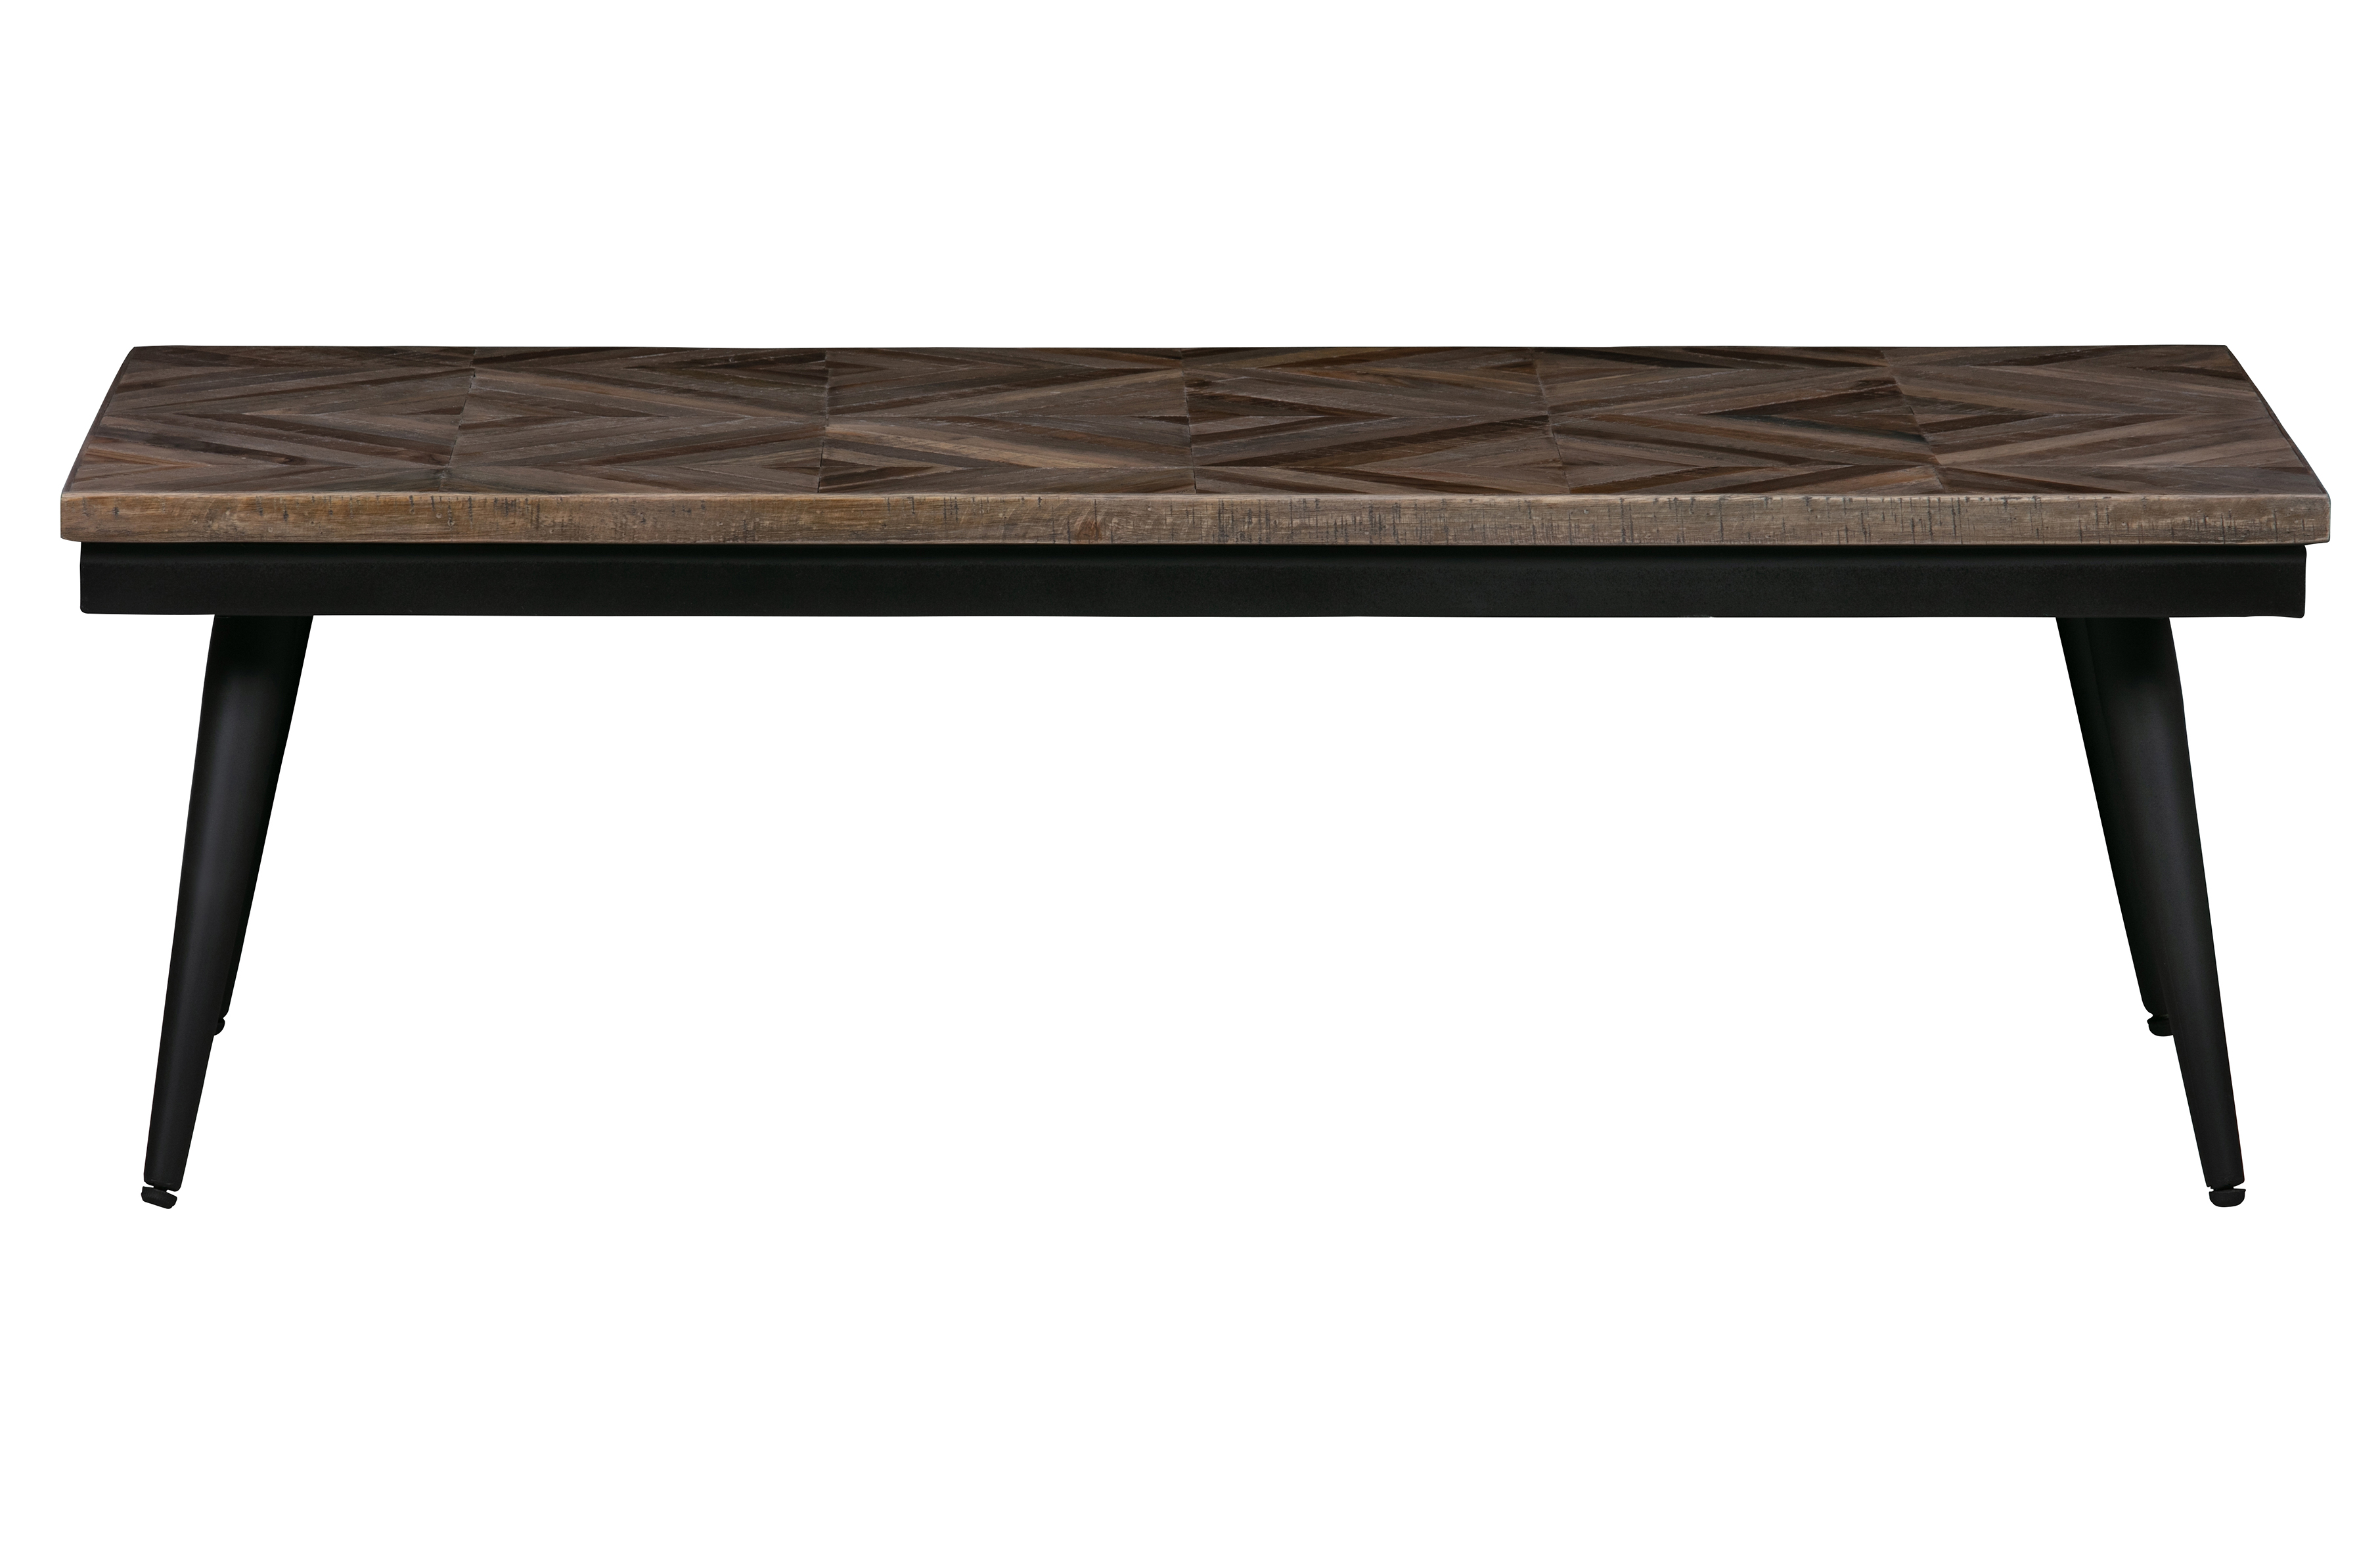 BEPUREHOME Rhombic sofabord, rektangulær - natur genbrugt teak og sort jern (120x60)